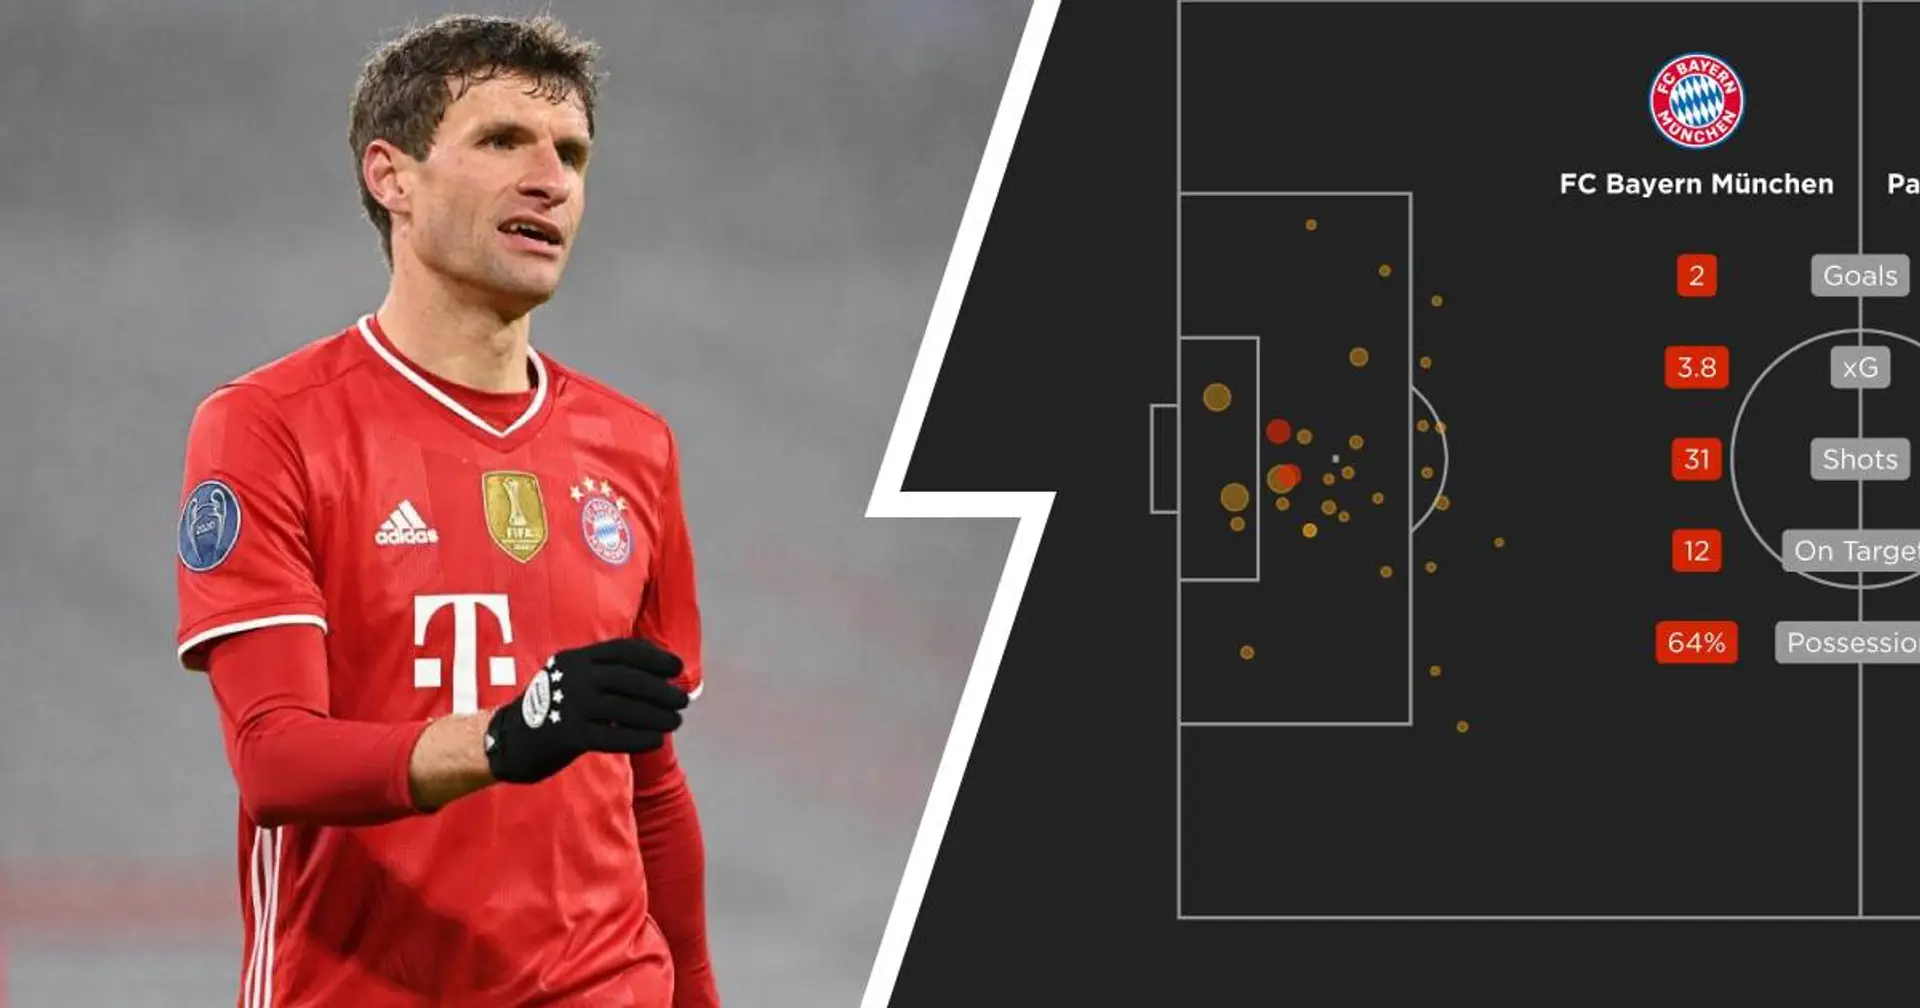 Müller zieht mit Ibra gleich, beeindruckender xG-Wert der Bayern vs. PSG: 4 kurze unveröffentlichte Geschichten des Tages